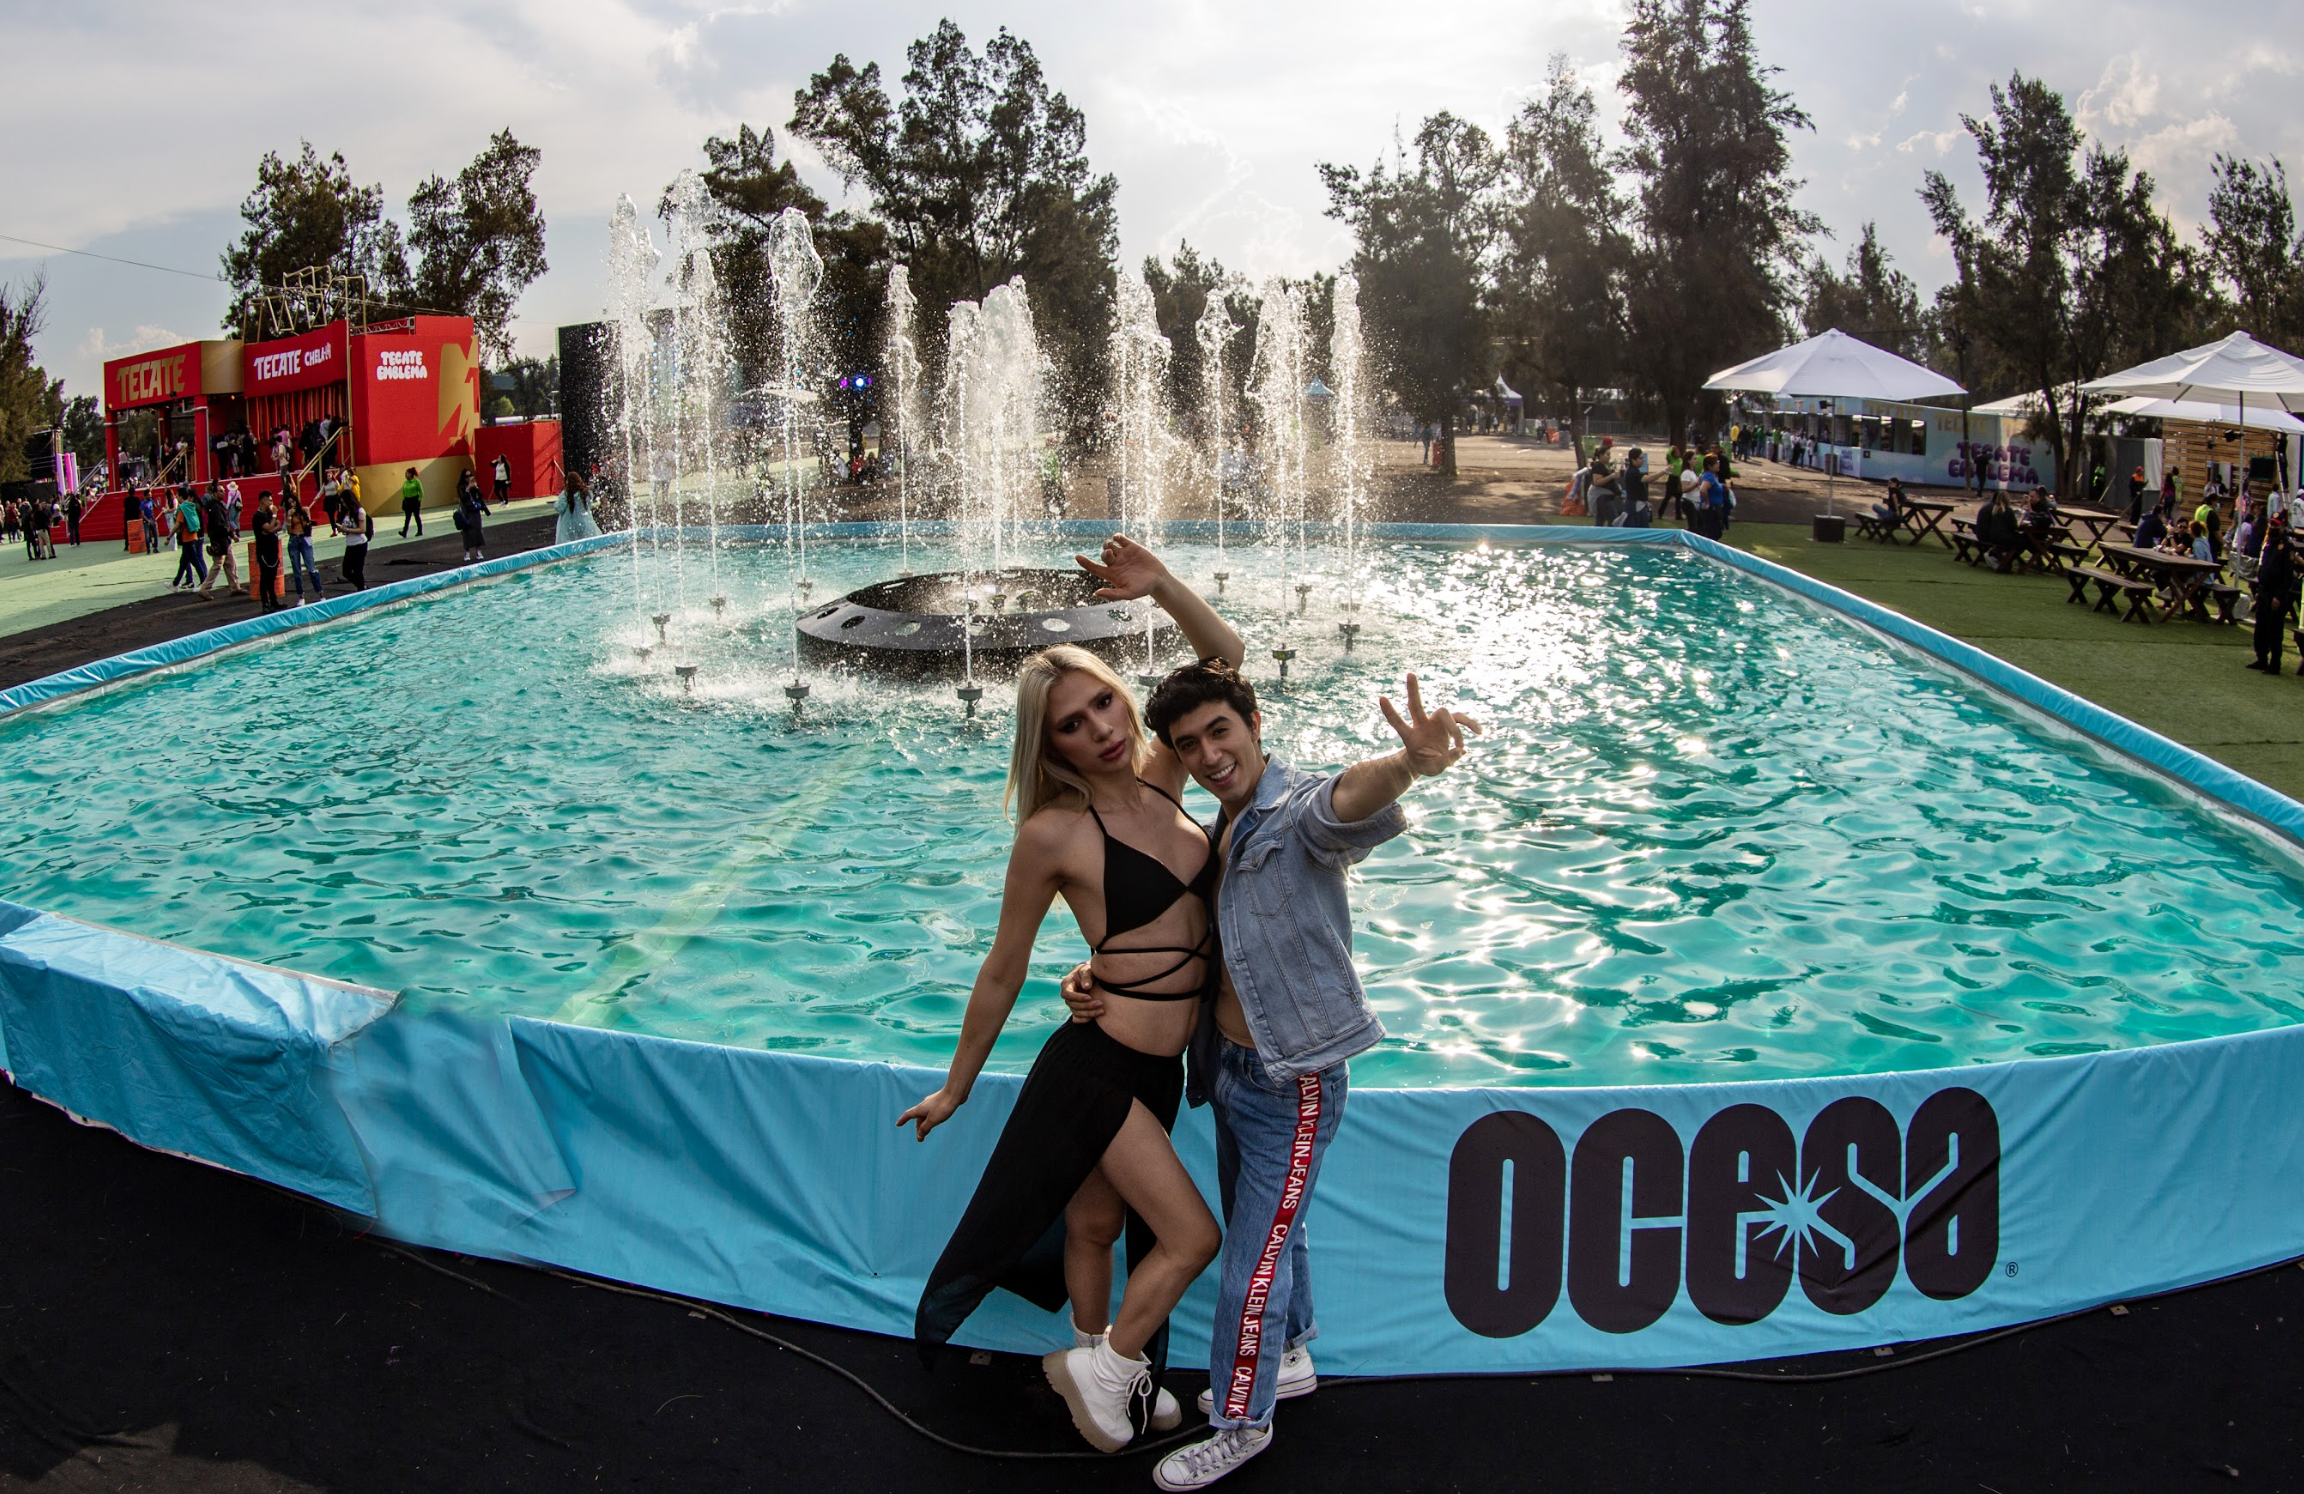 Dos personas posando con los brazos levantados frente a una fuente en un evento de música